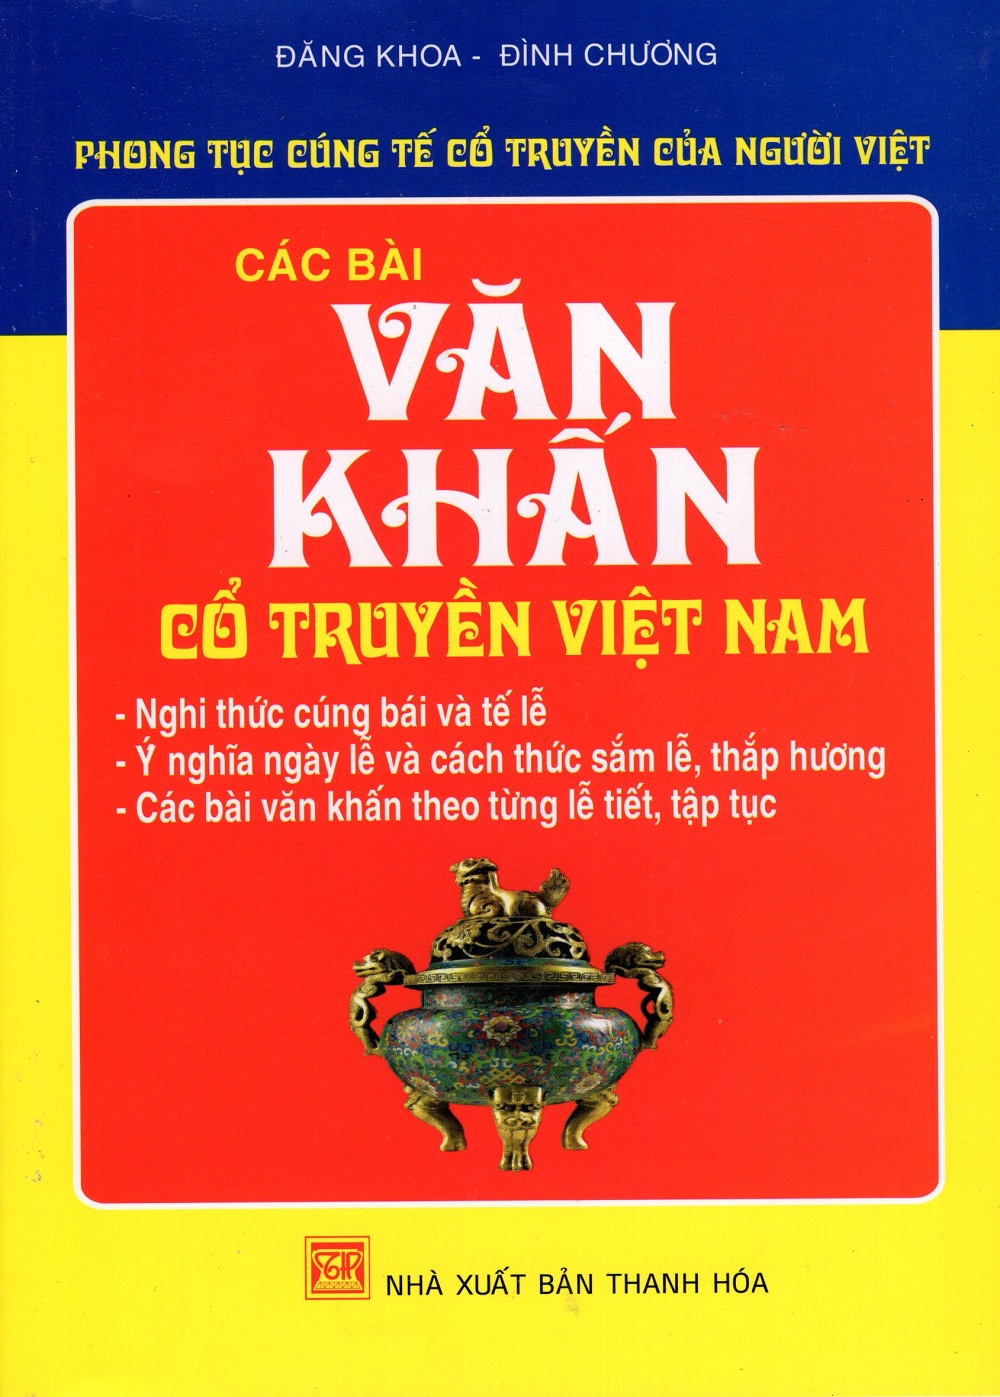 Phong Tục Cúng Tế Cổ Truyền Của Người Việt - Các Bài Văn Khấn Cổ Truyền Việt Nam